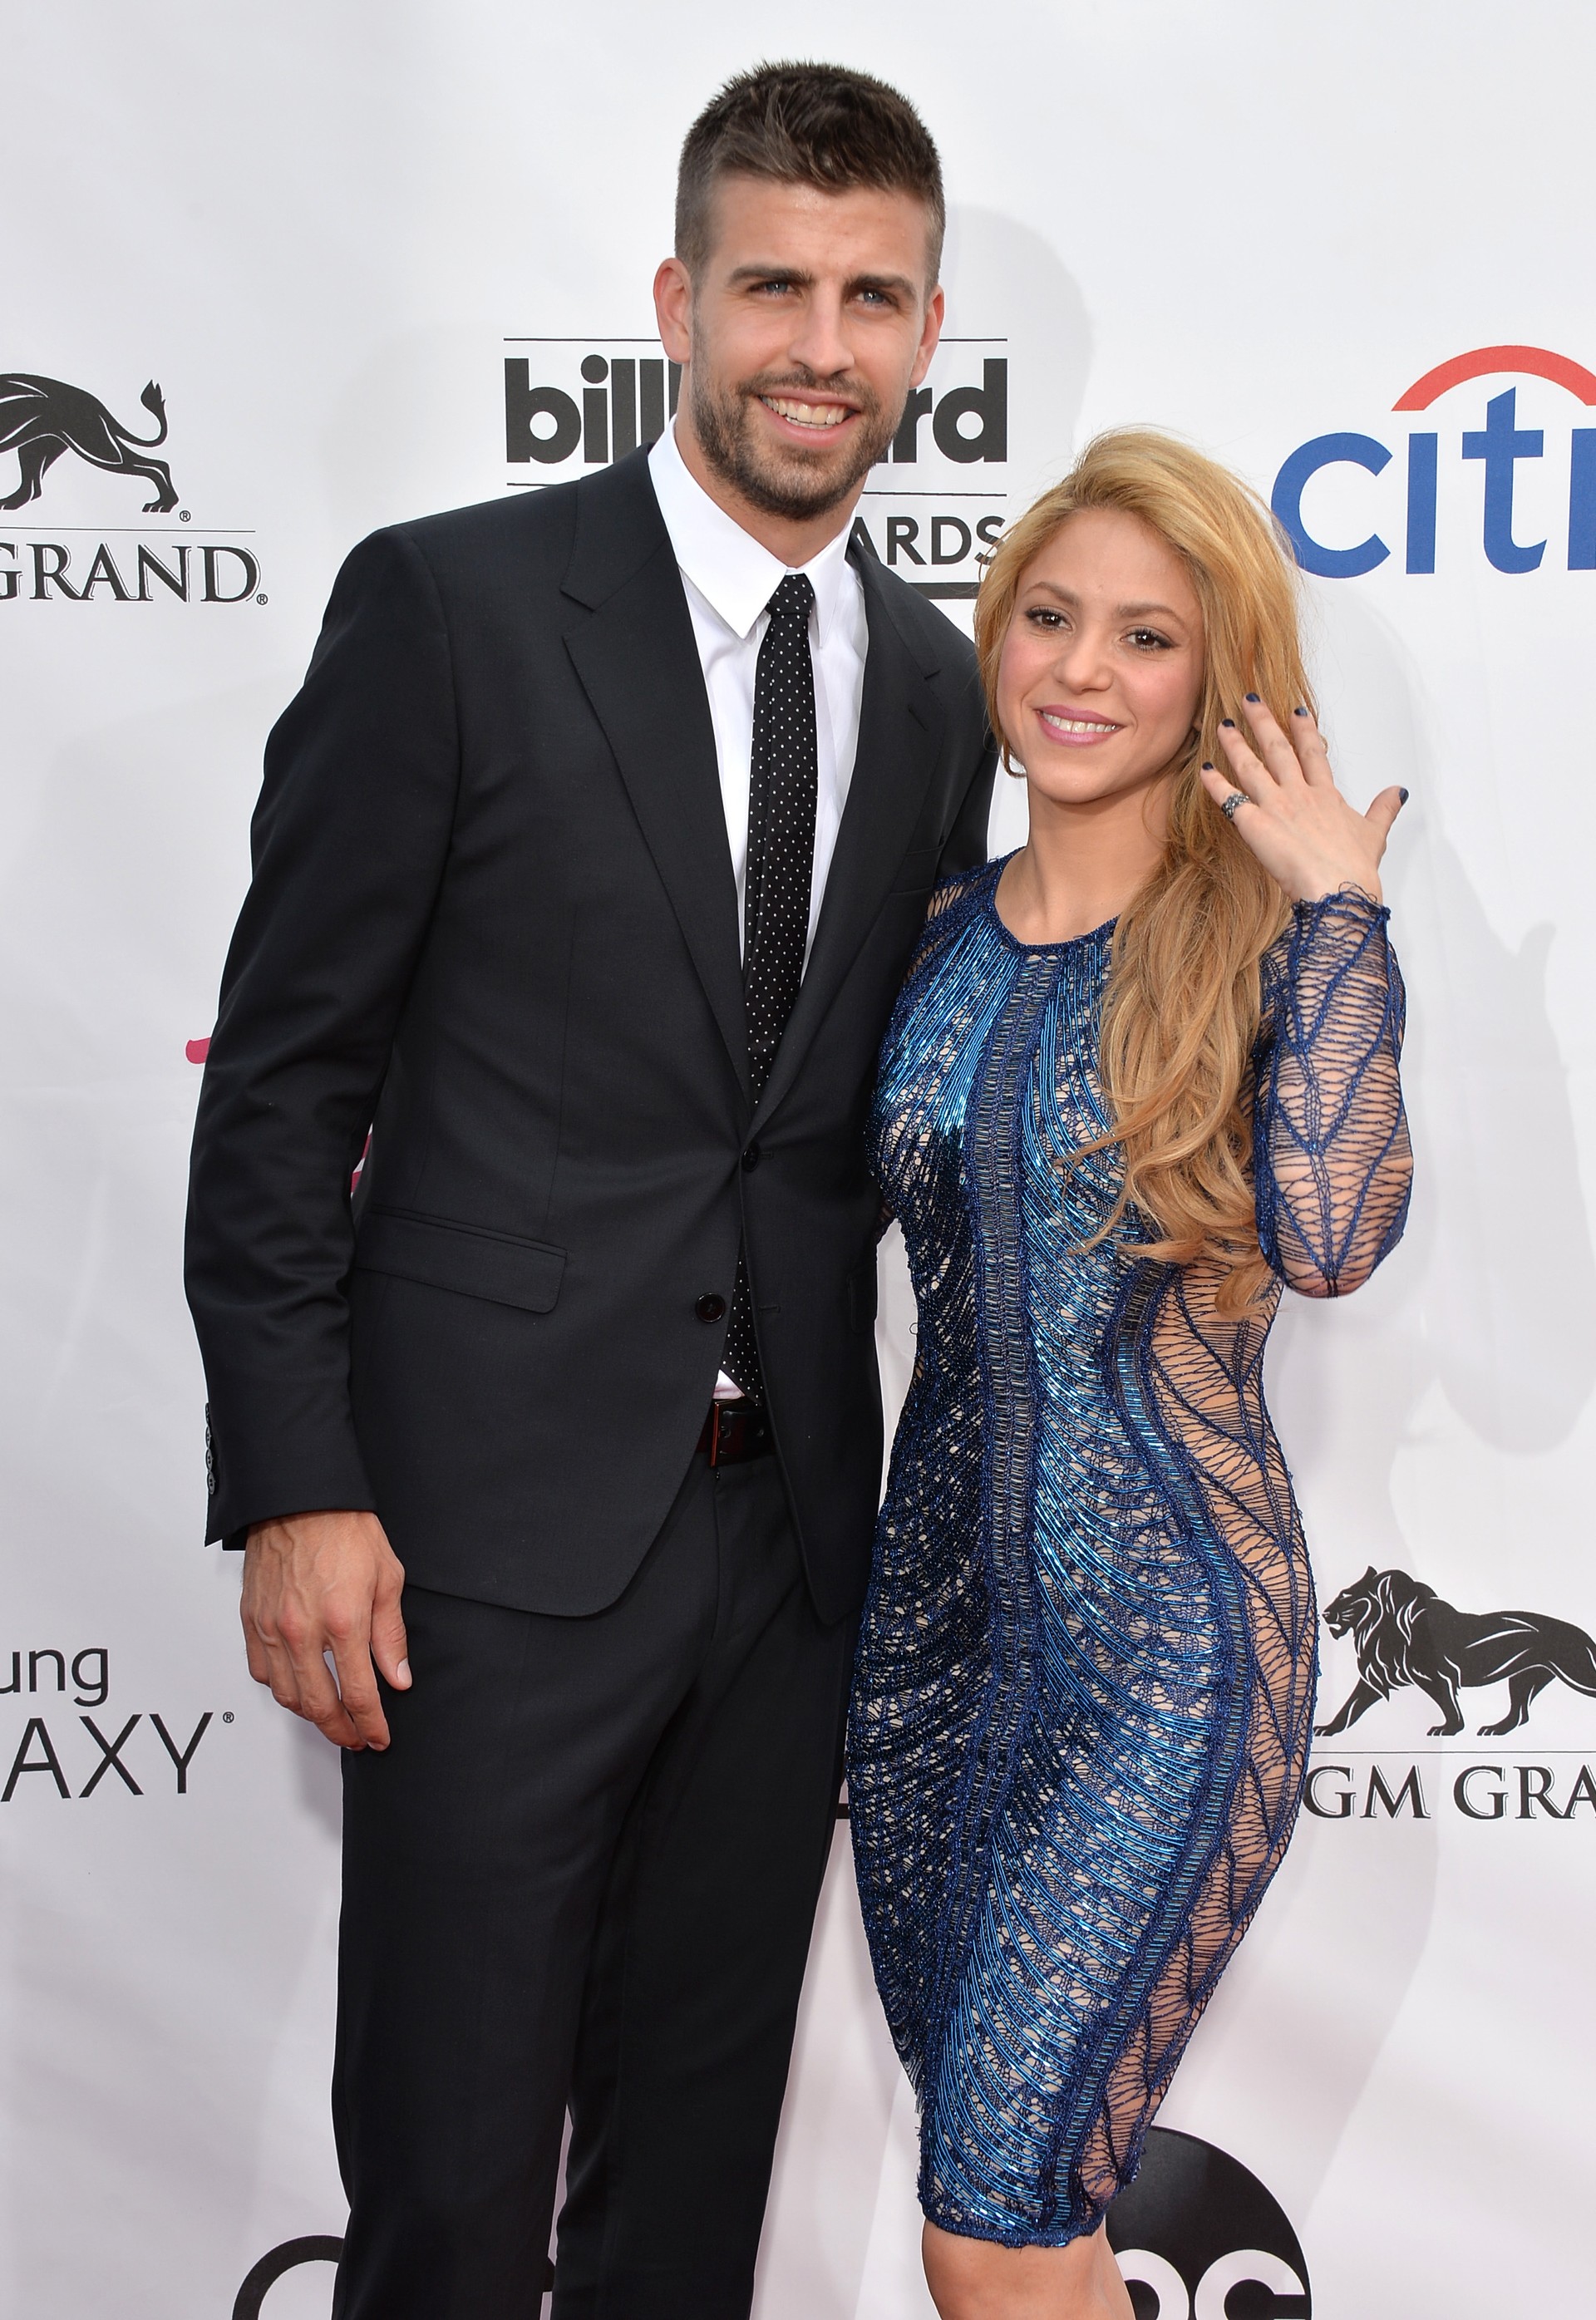 A cantora e embaixadora da UNICEF Shakira está com o jogador de futebol Piqué desde 2010. O filho do casal, Milan, faz sucesso nas redes sociais com suas bochechas fofas. (Foto: Getty Images)